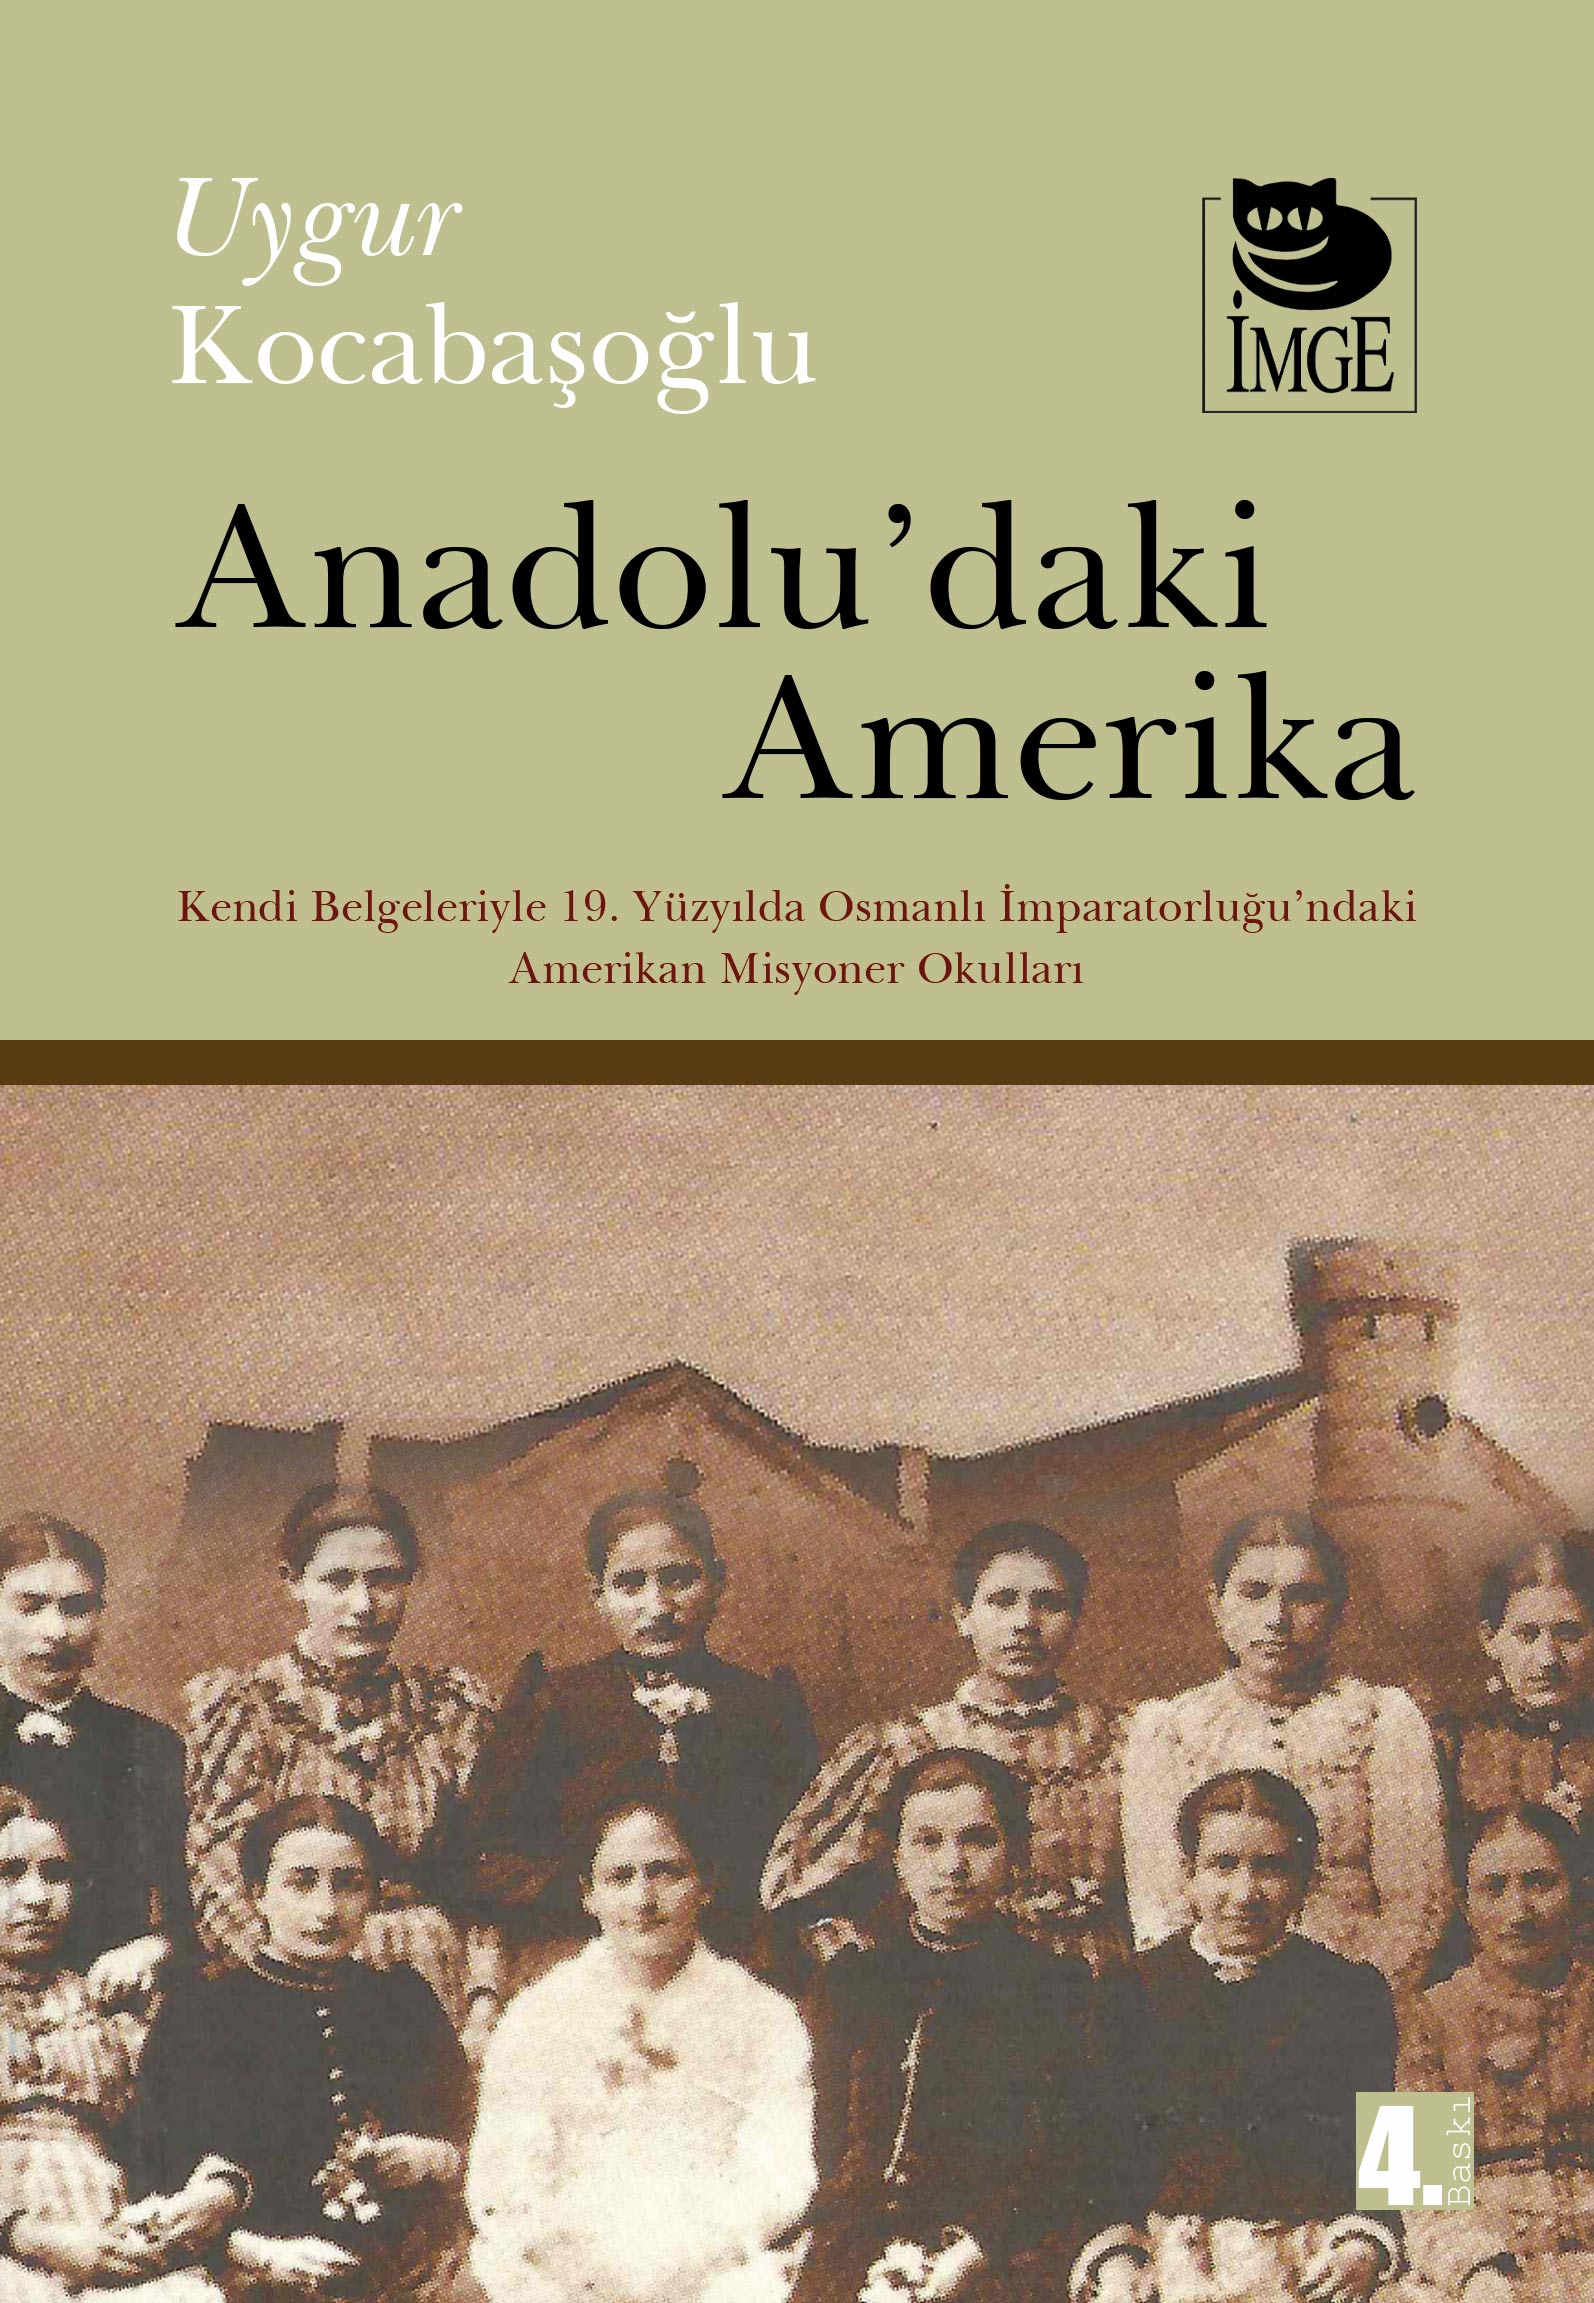 Anadolu'daki Amerika; Kendi Belgeleriyle 19. Yüzyılda Osmanlı İmp.'ndaki Amerikan Misyoner Okulları